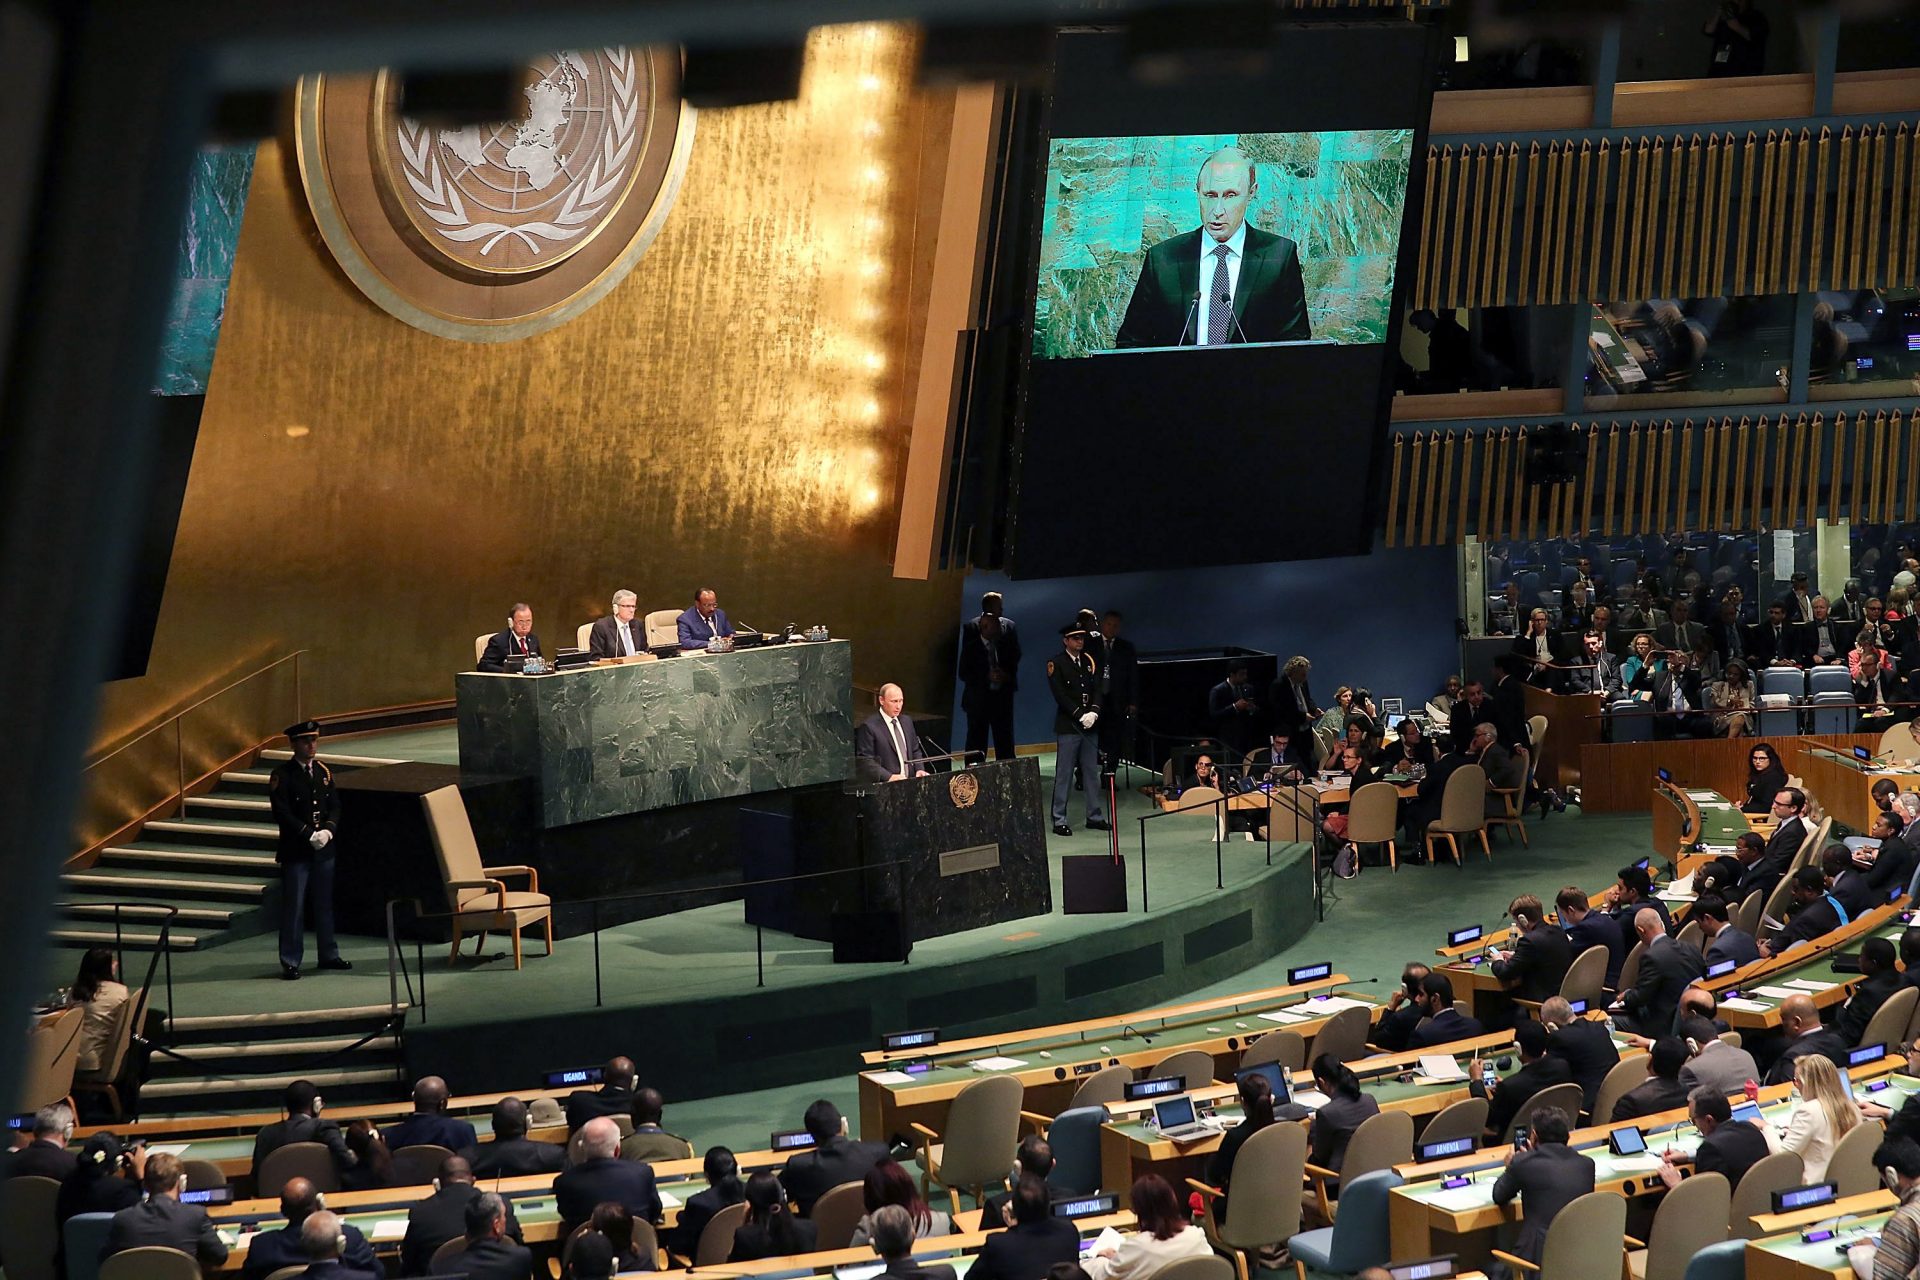 Assemblée générale des Nations Unies